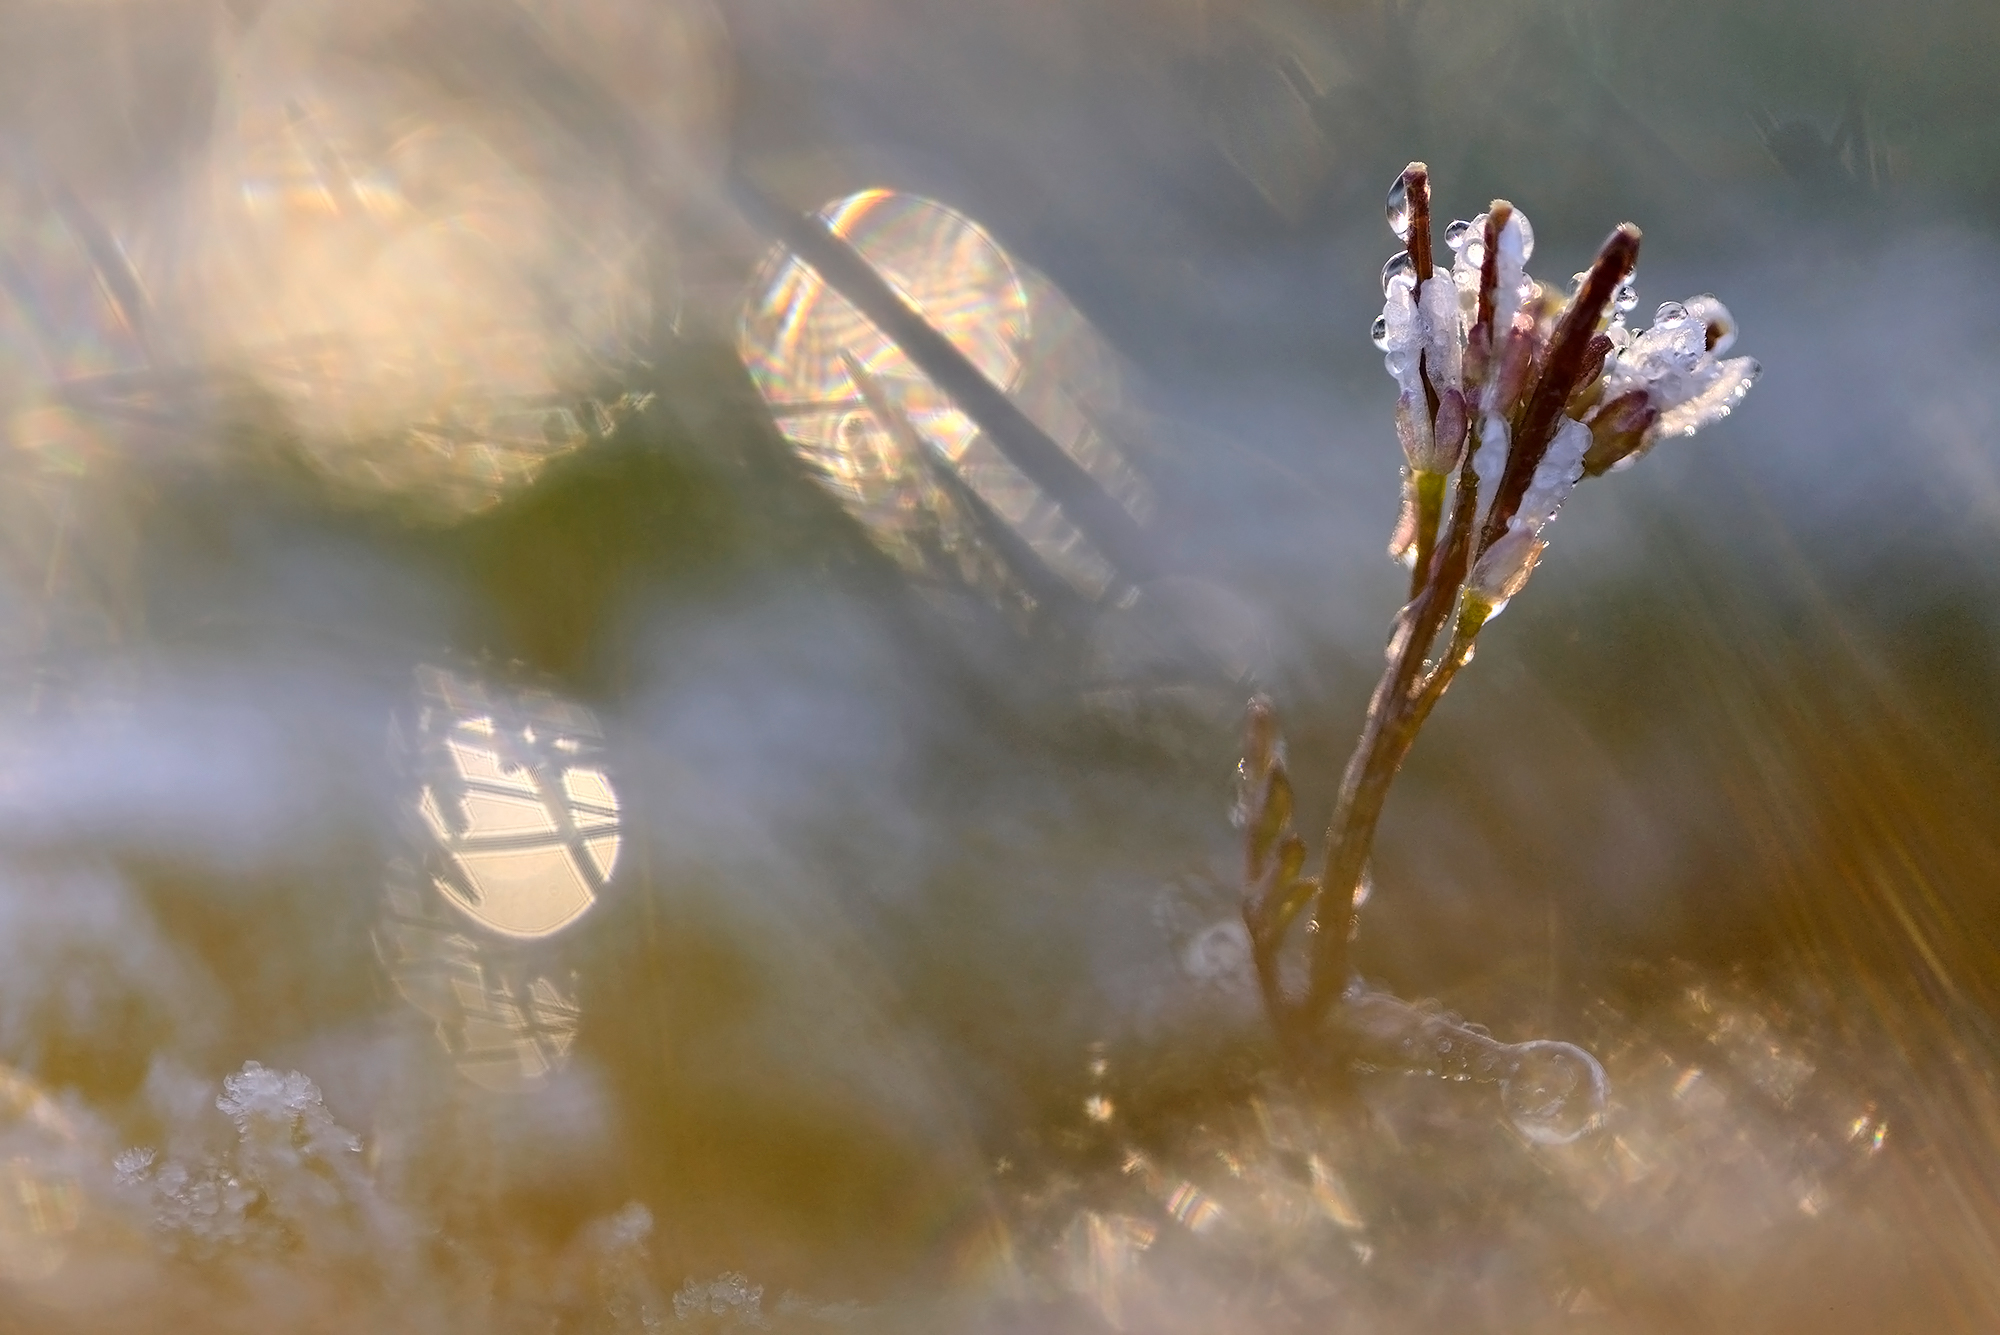 Kleine veldkers (Cardamine hirsuta) in tegenlicht tijdens zonsopkomst op een koude lentedag in de duinen van het waddeneiland Texel.